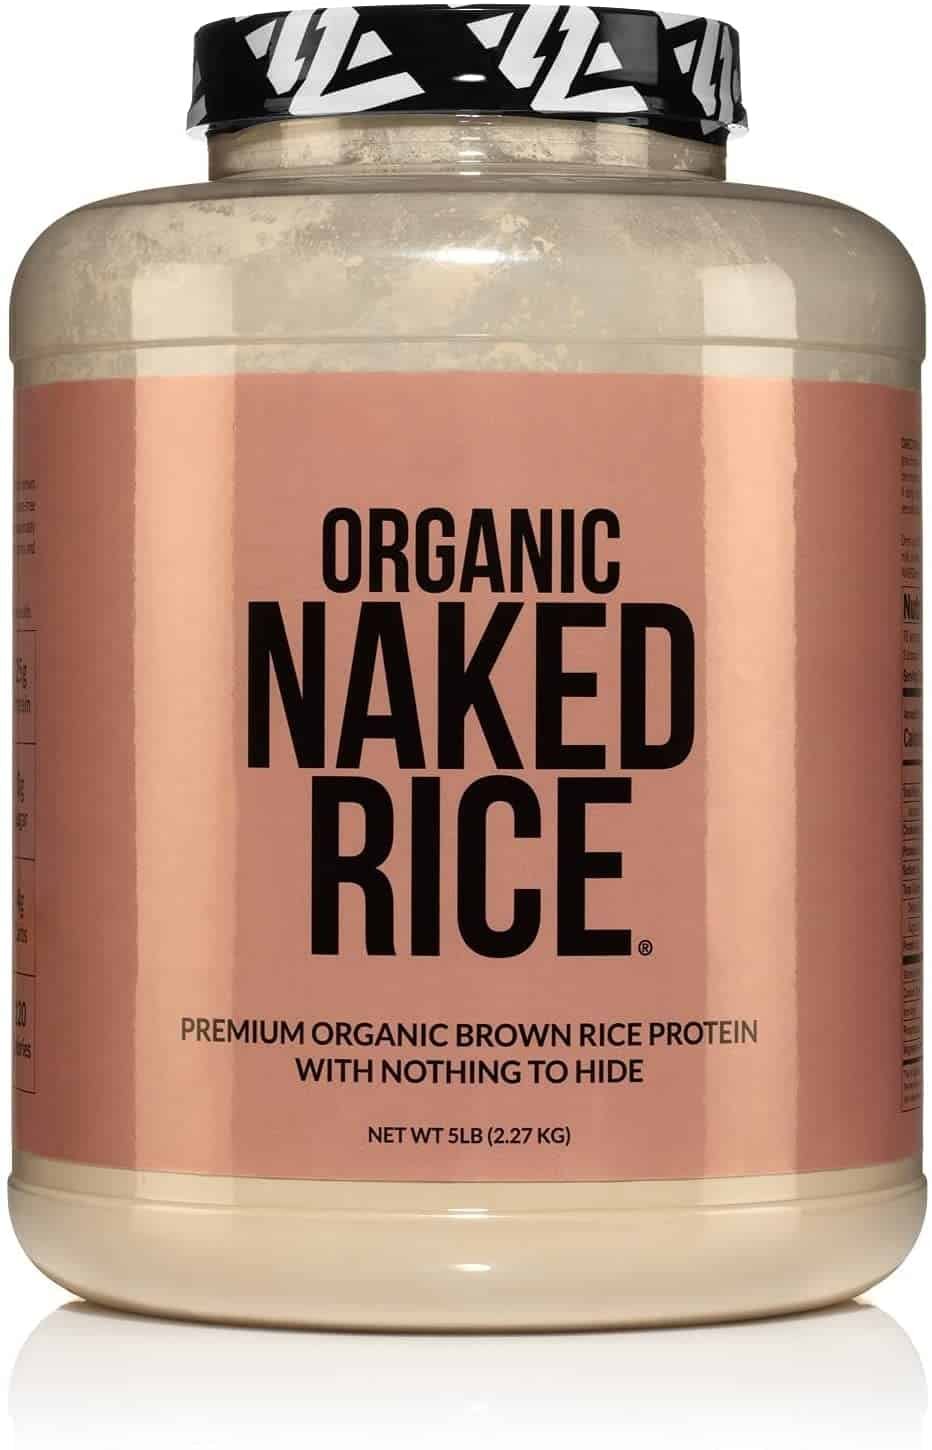 Naked Rice - Organic Brown Rice Protein Powder